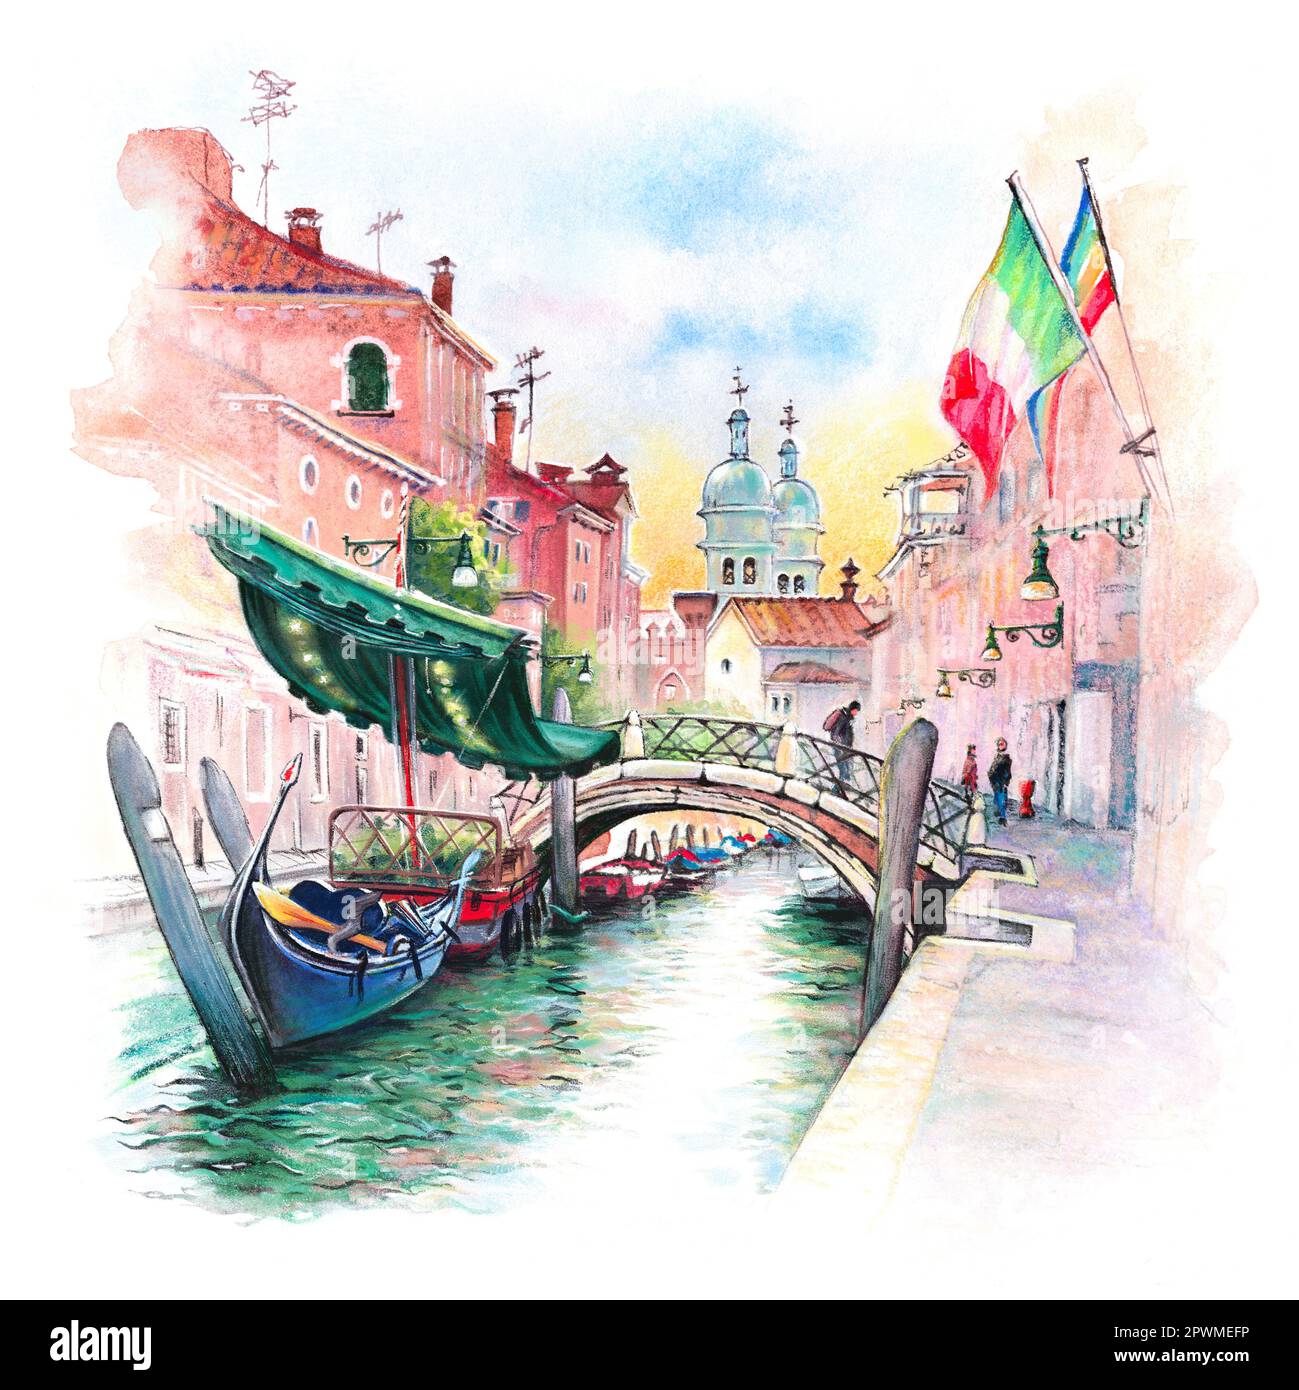 Aquarellskizze des San Barnaba-Kanals, helle Häuser und Gondeln an ihren Anlegestellen, Venedig, Italien. Stockfoto